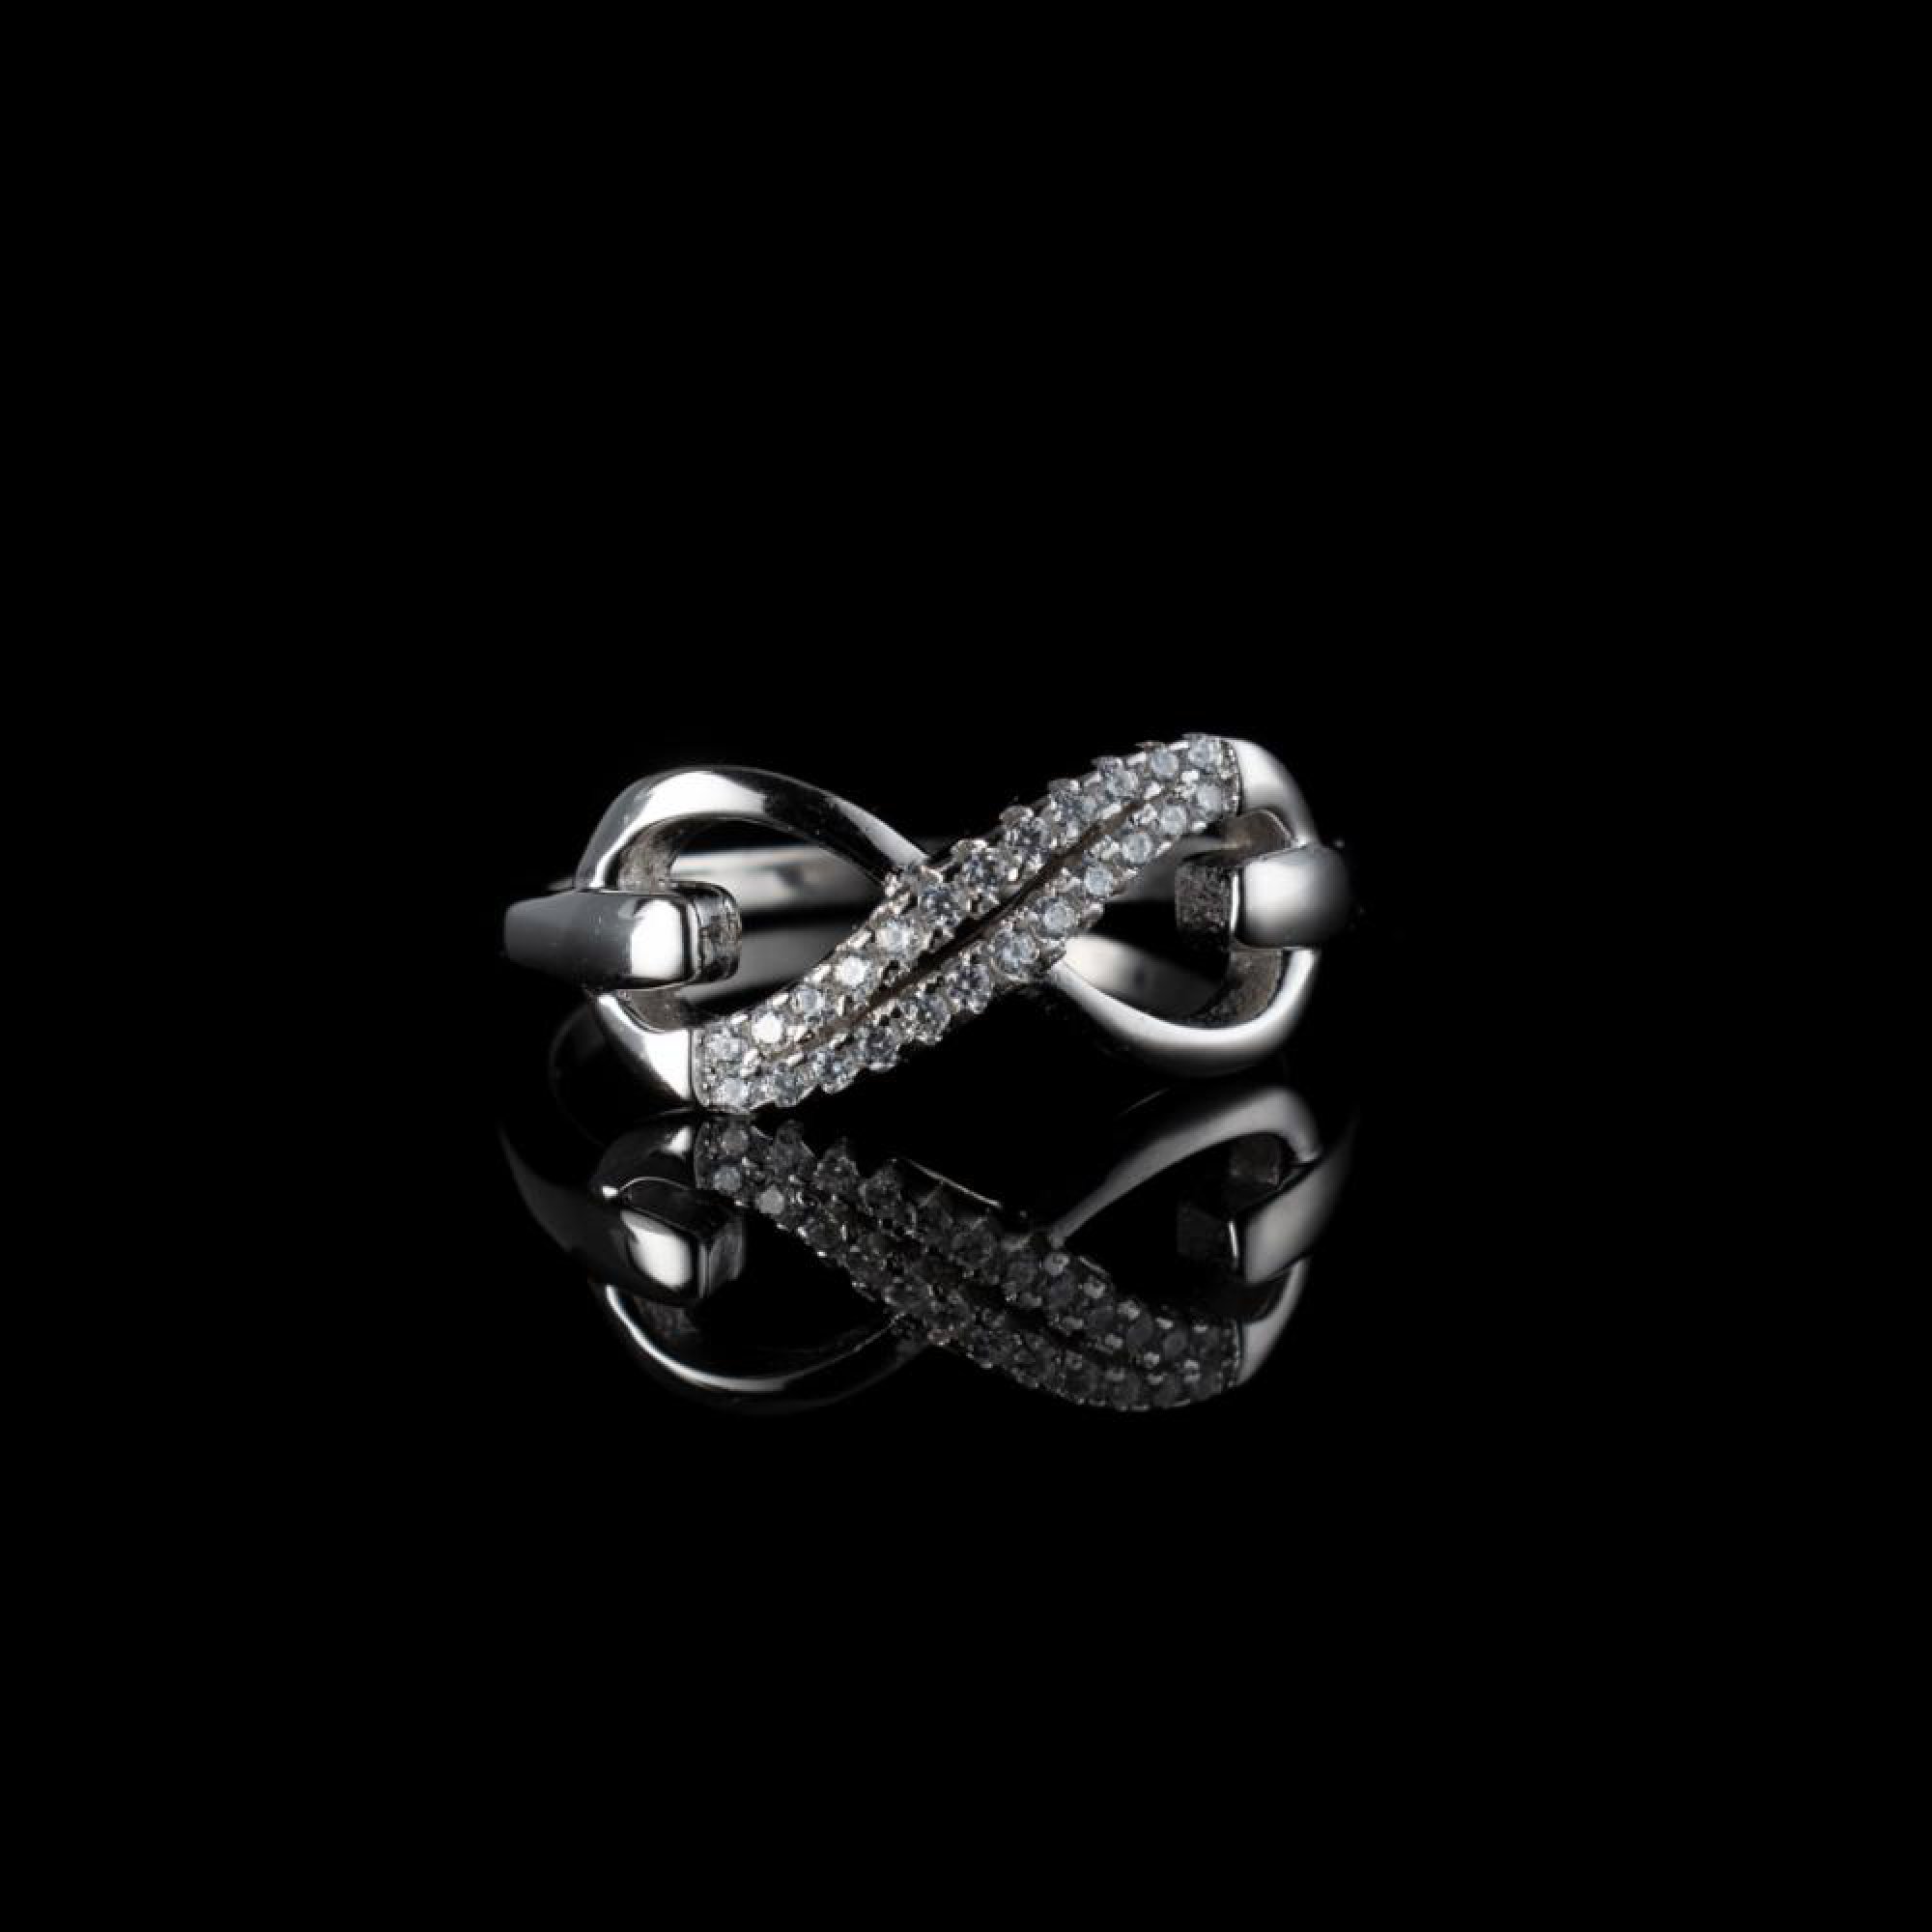 Infinity ring with zircon stones